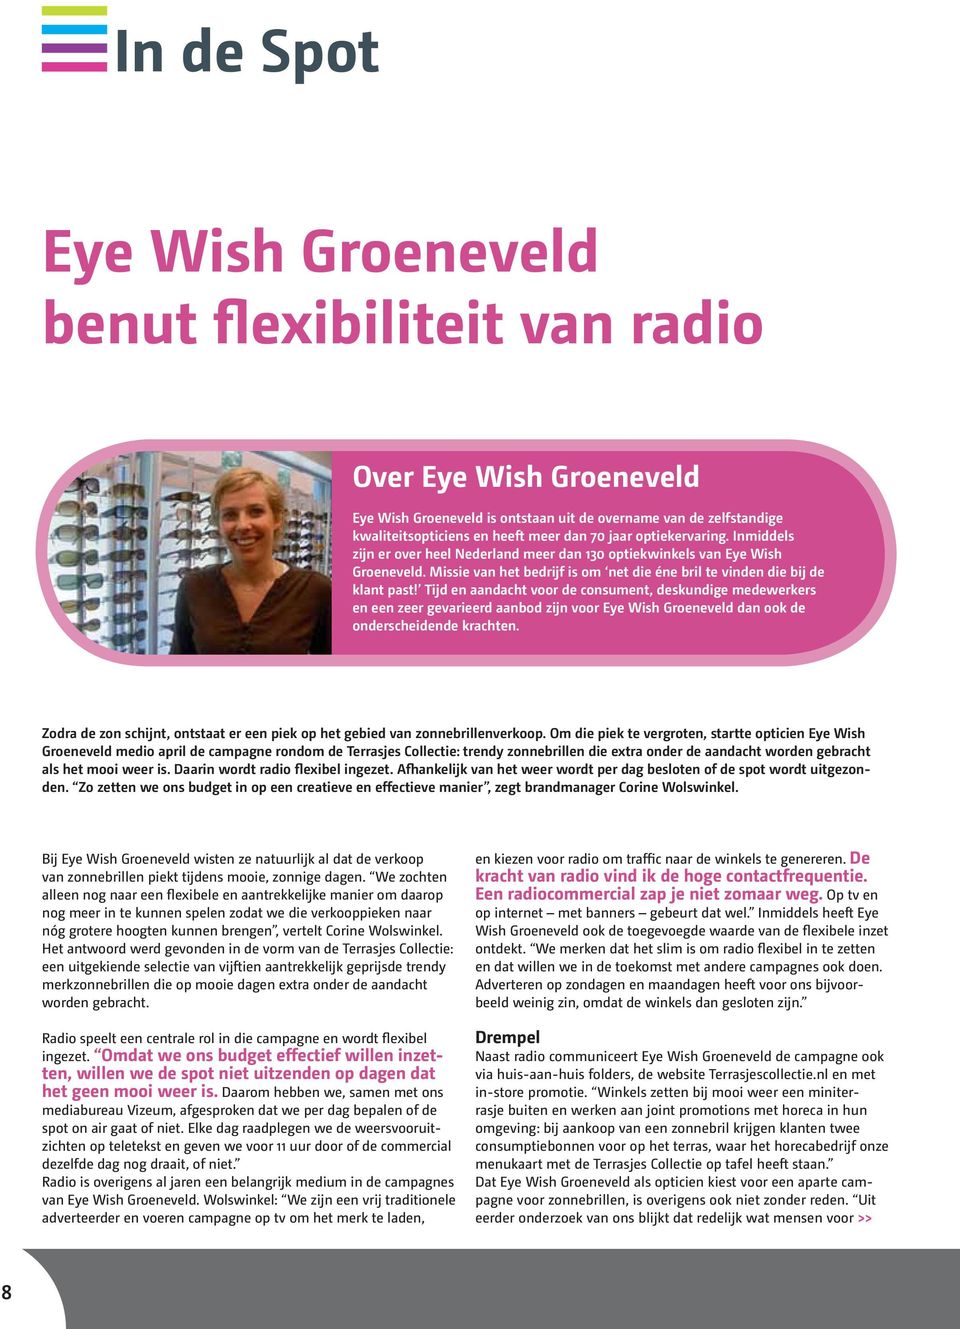 Tijd en aandacht voor de consument, deskundige medewerkers en een zeer gevarieerd aanbod zijn voor Eye Wish Groeneveld dan ook de onderscheidende krachten.